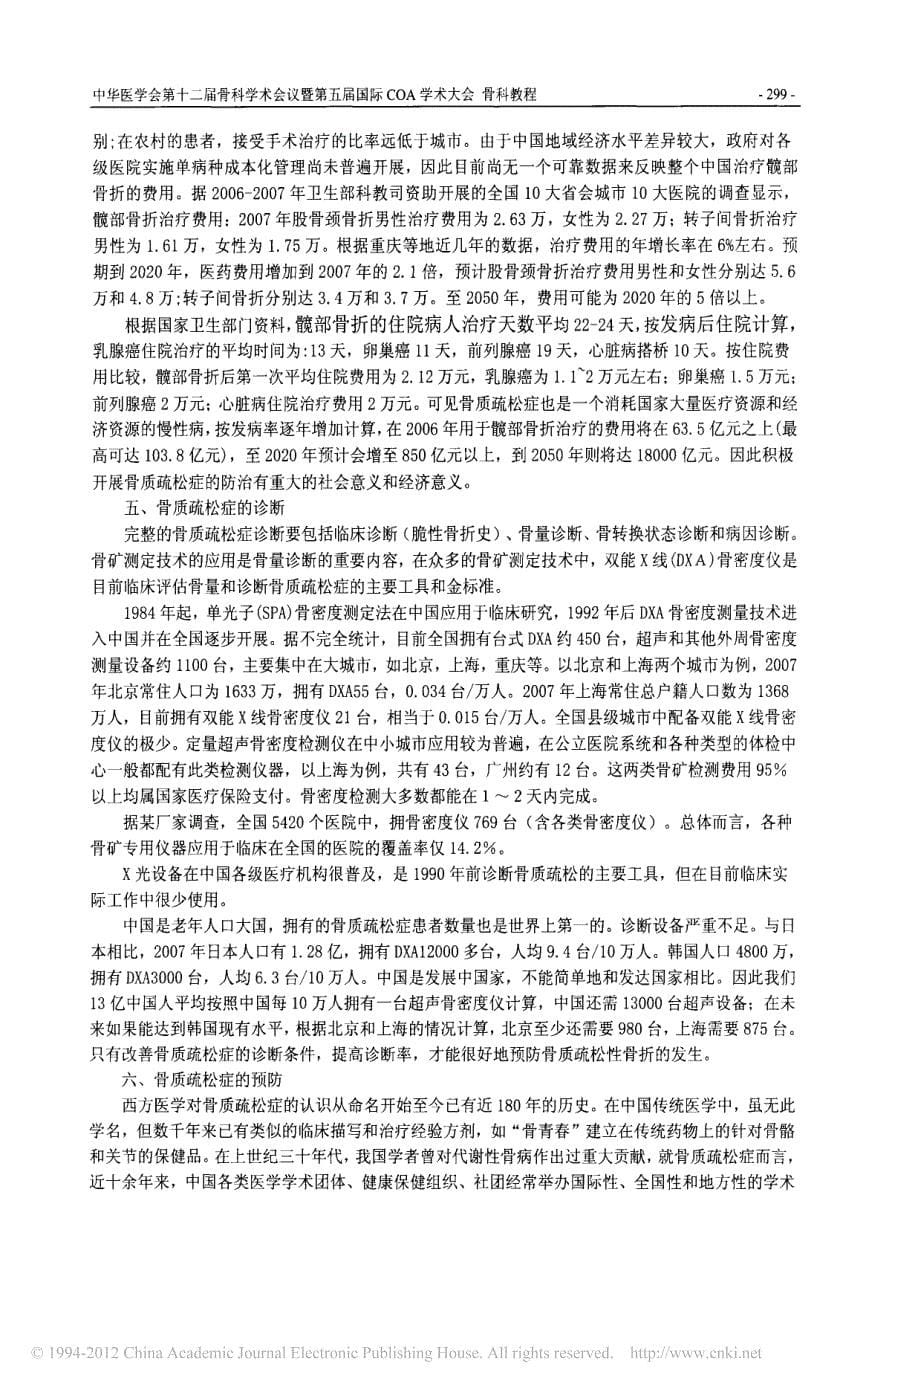 _骨质疏松症防治中国白皮书_的编写和解读_第5页